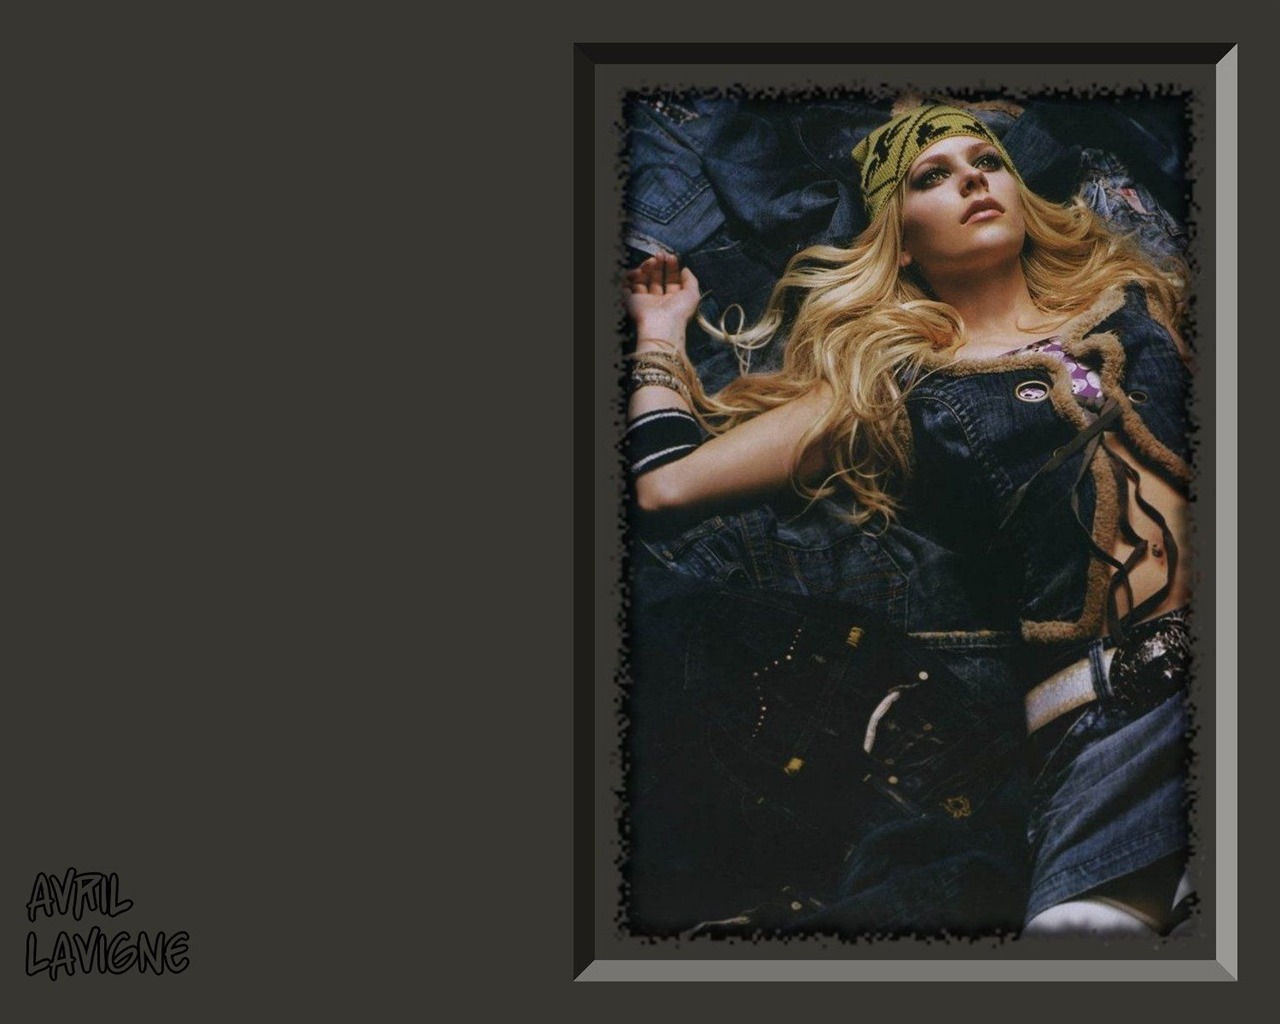 Avril Lavigne 艾薇儿·拉维妮 美女壁纸23 - 1280x1024